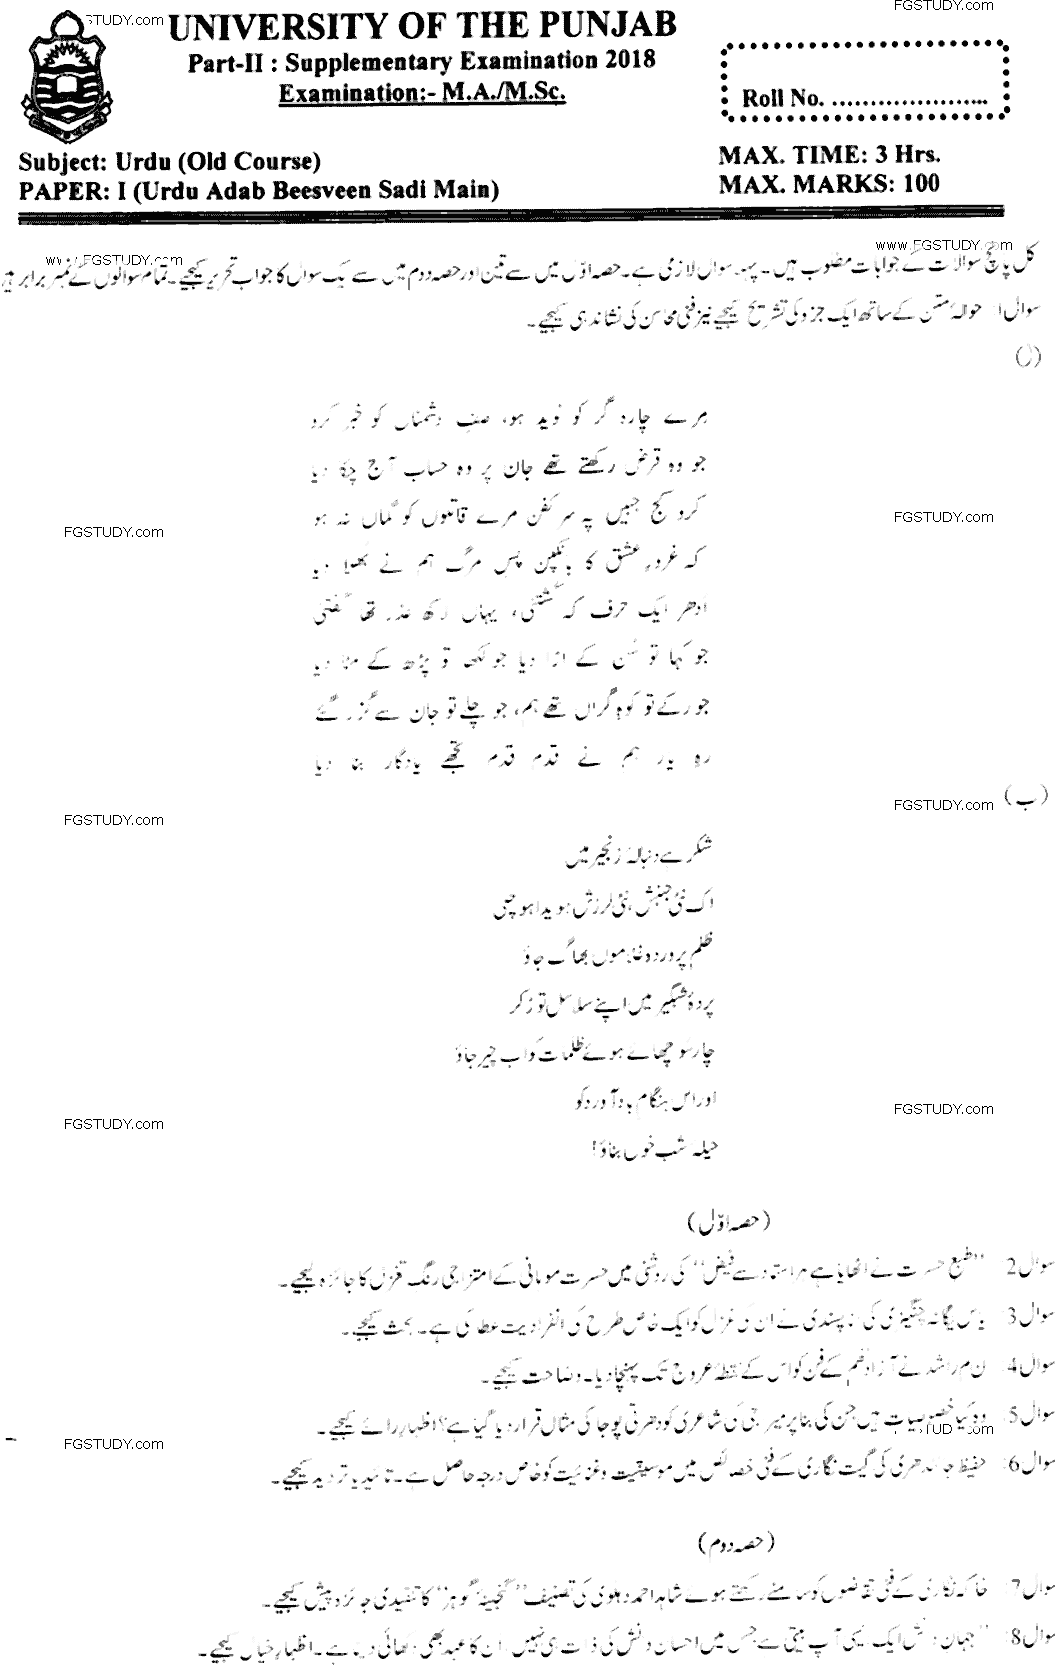 MA Part 2 Urdu Urdu Adab Beesveen Sadi Main Past Paper 2018 Punjab University